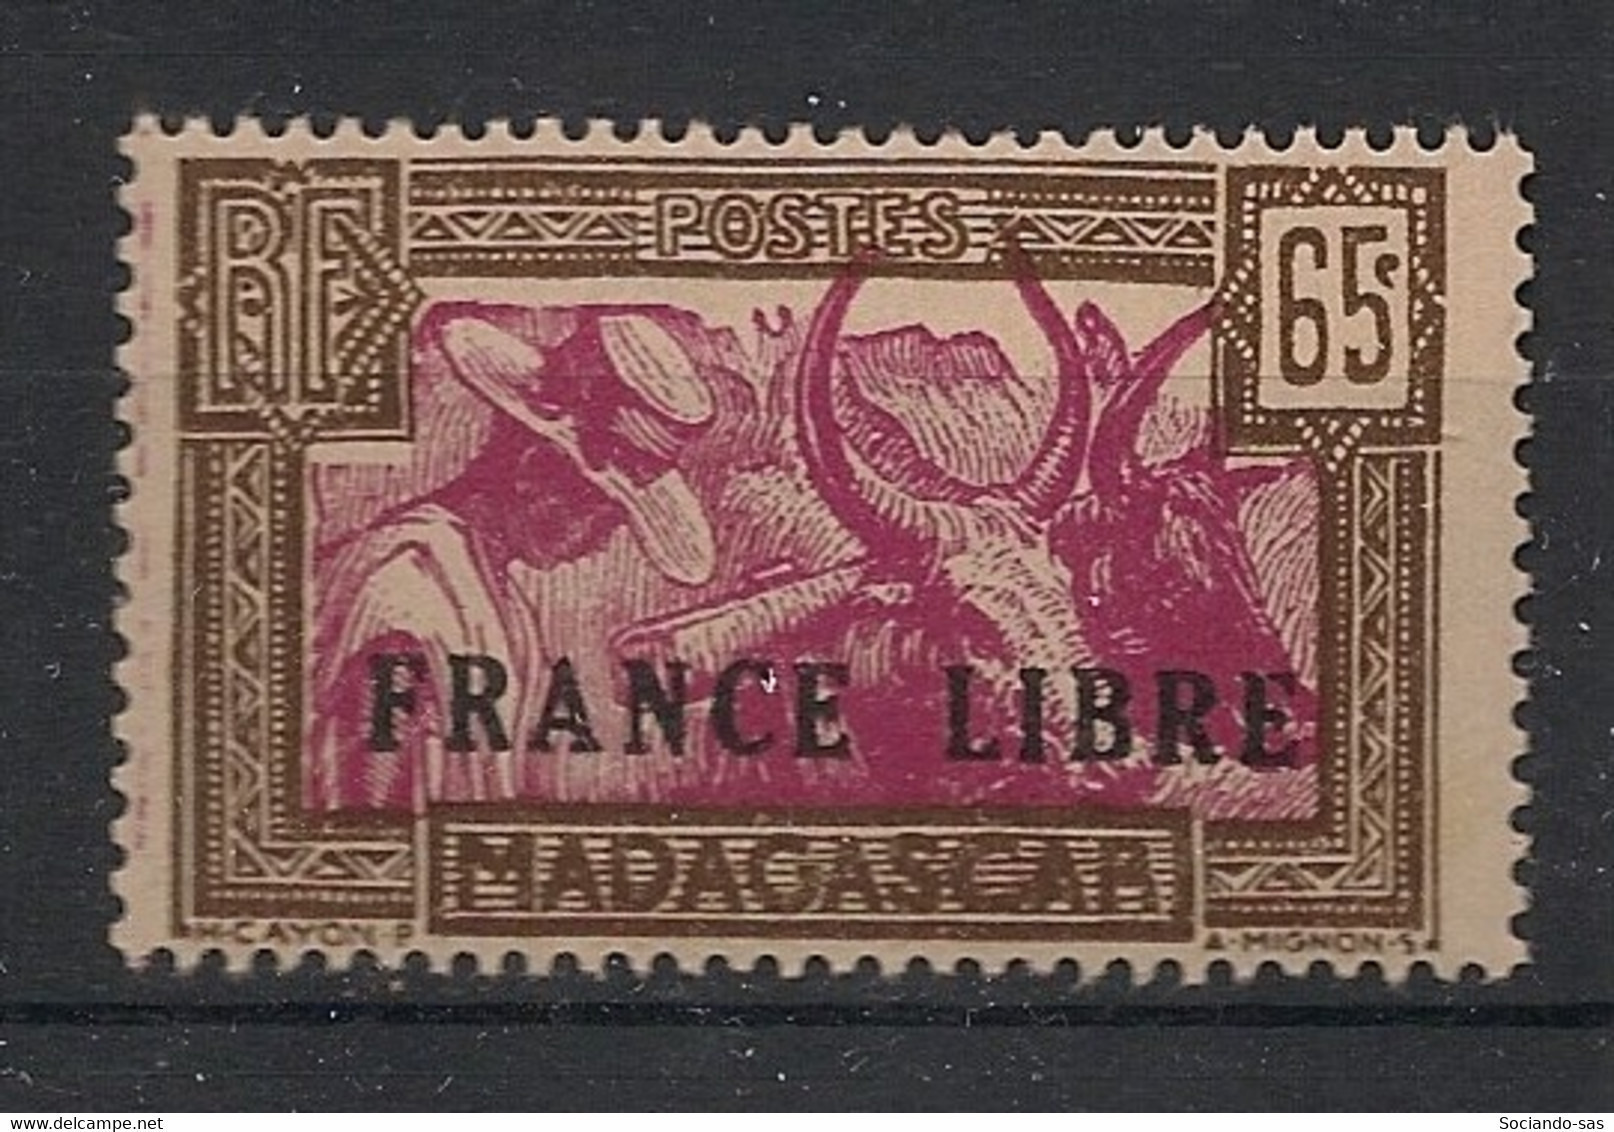 MADAGASCAR - 1942 - N°YT. 236 - France Libre - Neuf GC** / MNH / Postfrisch - Nuevos